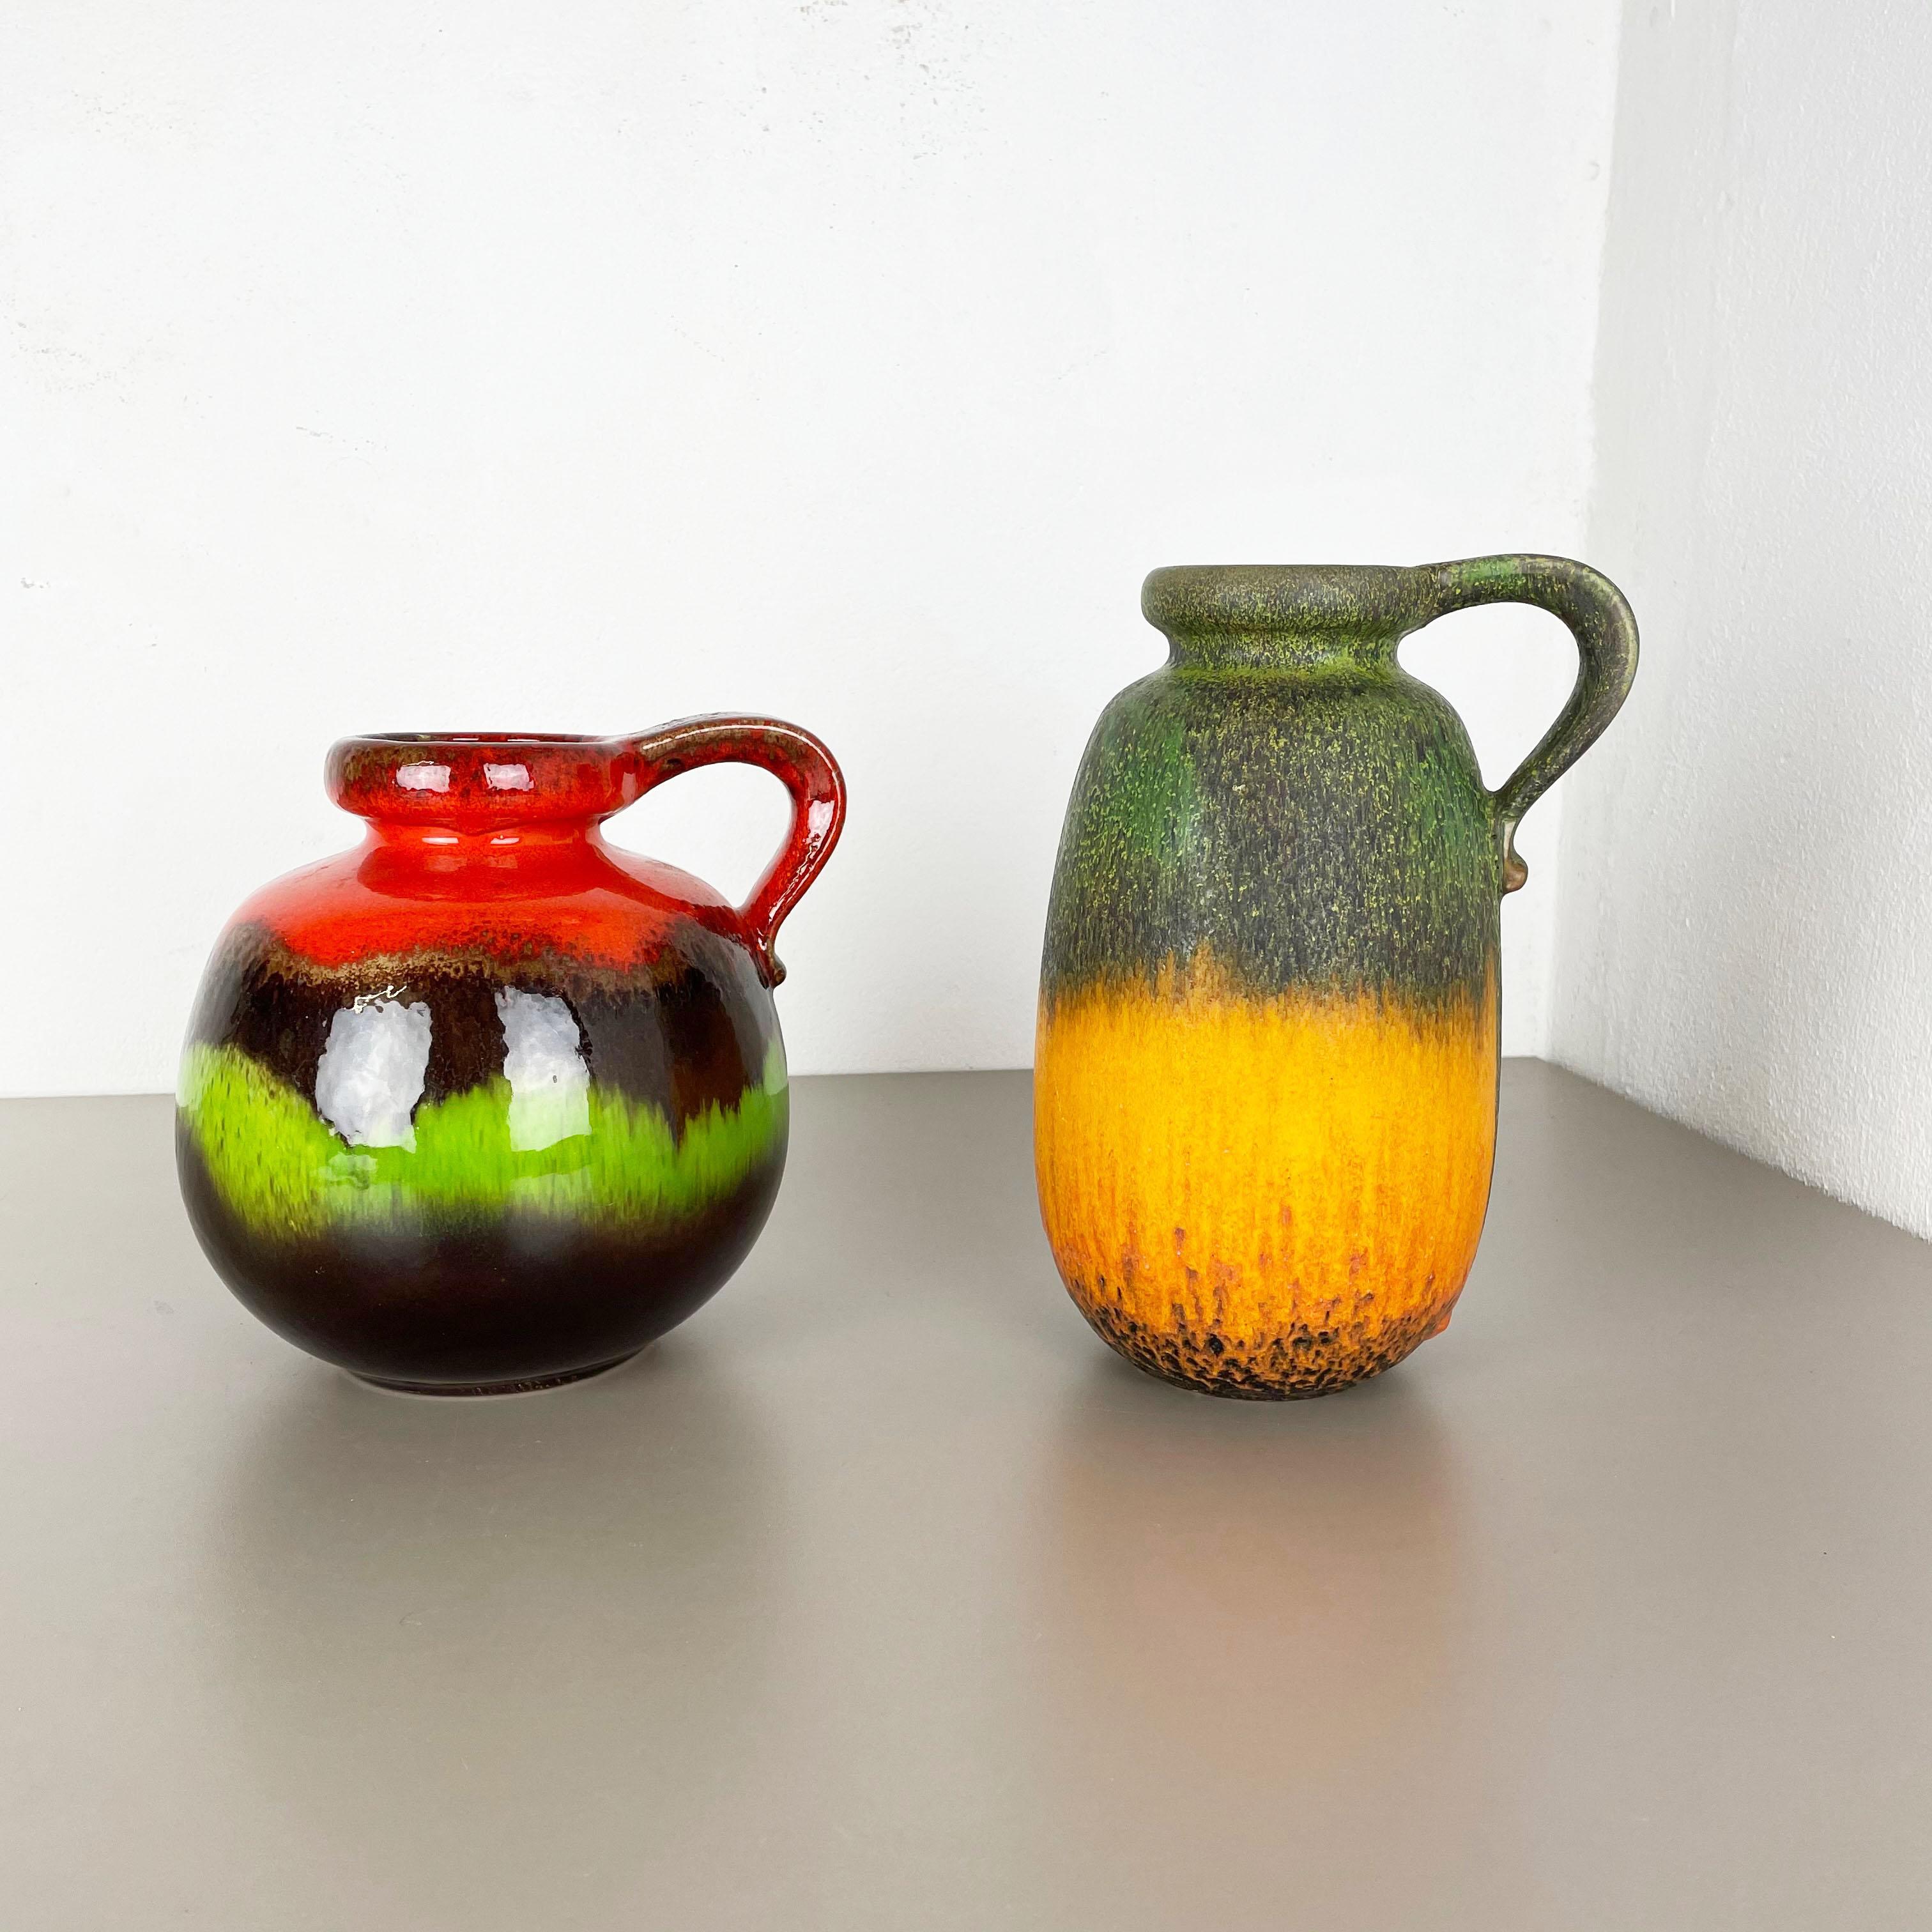 Artikel:

Set aus zwei fetten Lavakunstvasen



Produzent:

Scheurich, Deutschland



Jahrzehnt:

1970s




Diese originalen Vintage-Vasen wurden in den 1970er Jahren in Deutschland hergestellt. Sie ist aus Keramik in fetter